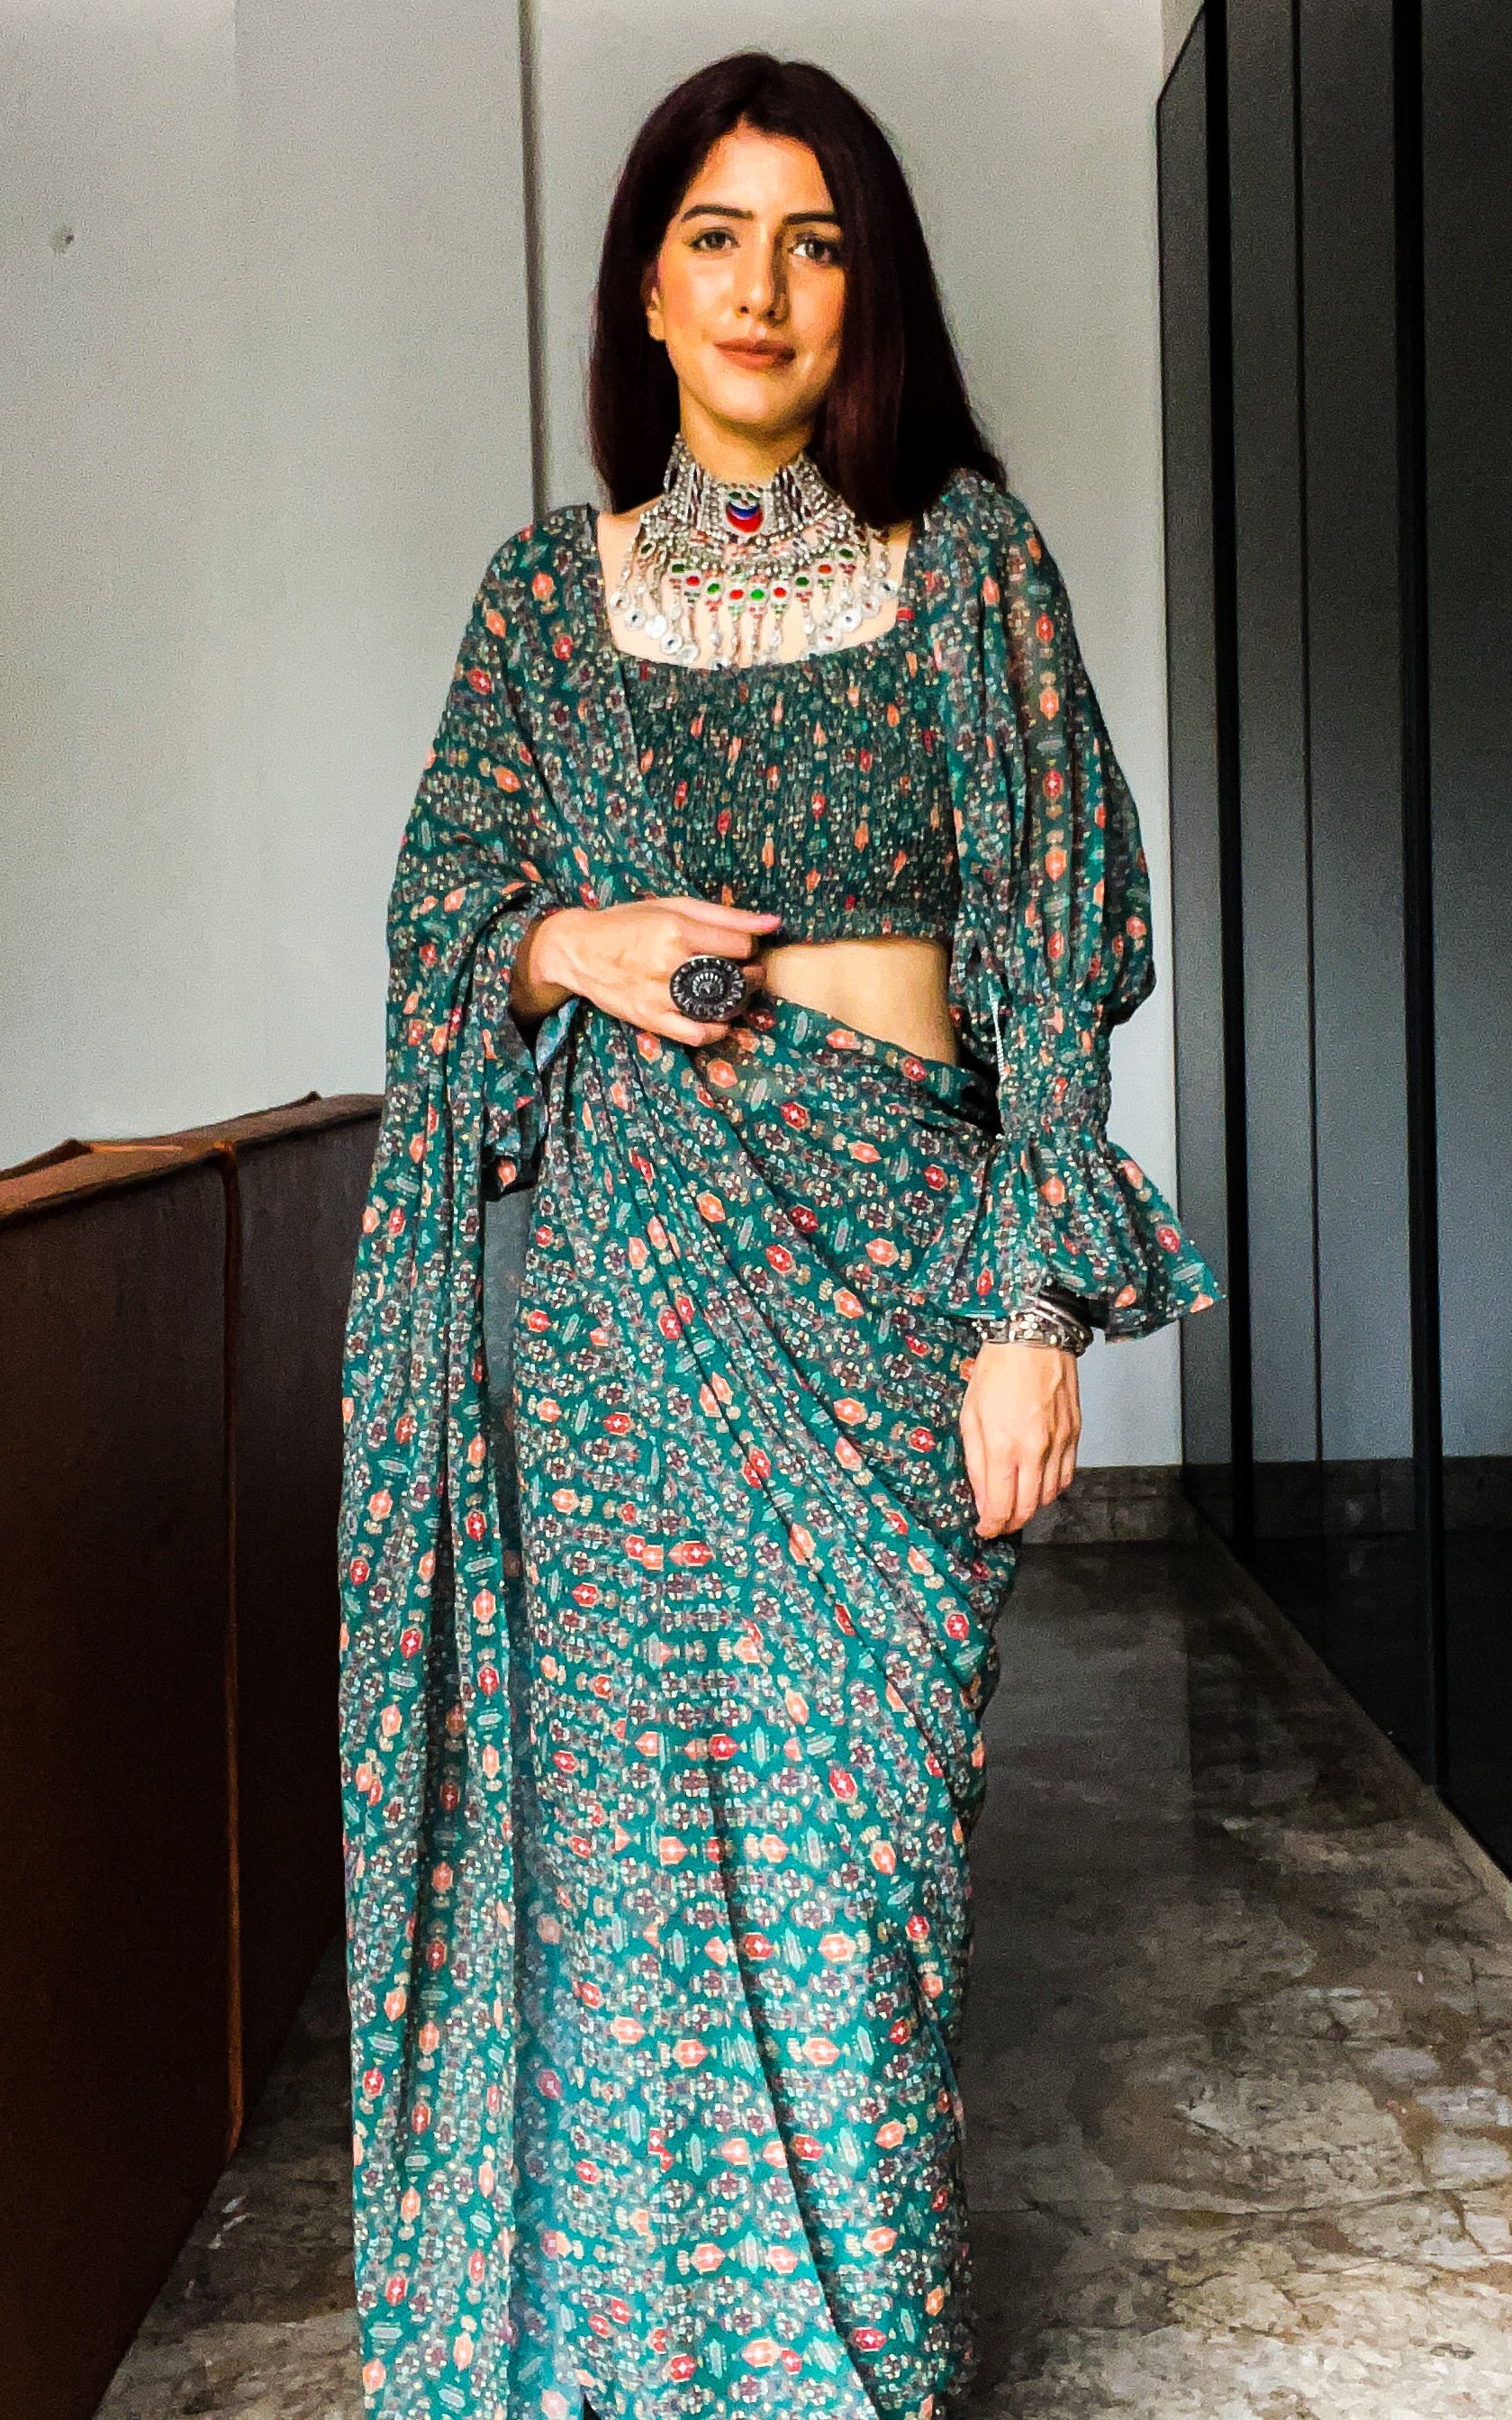 Saree, Green Saree, Silk Saree, Stitched Blouse, Designer Saree